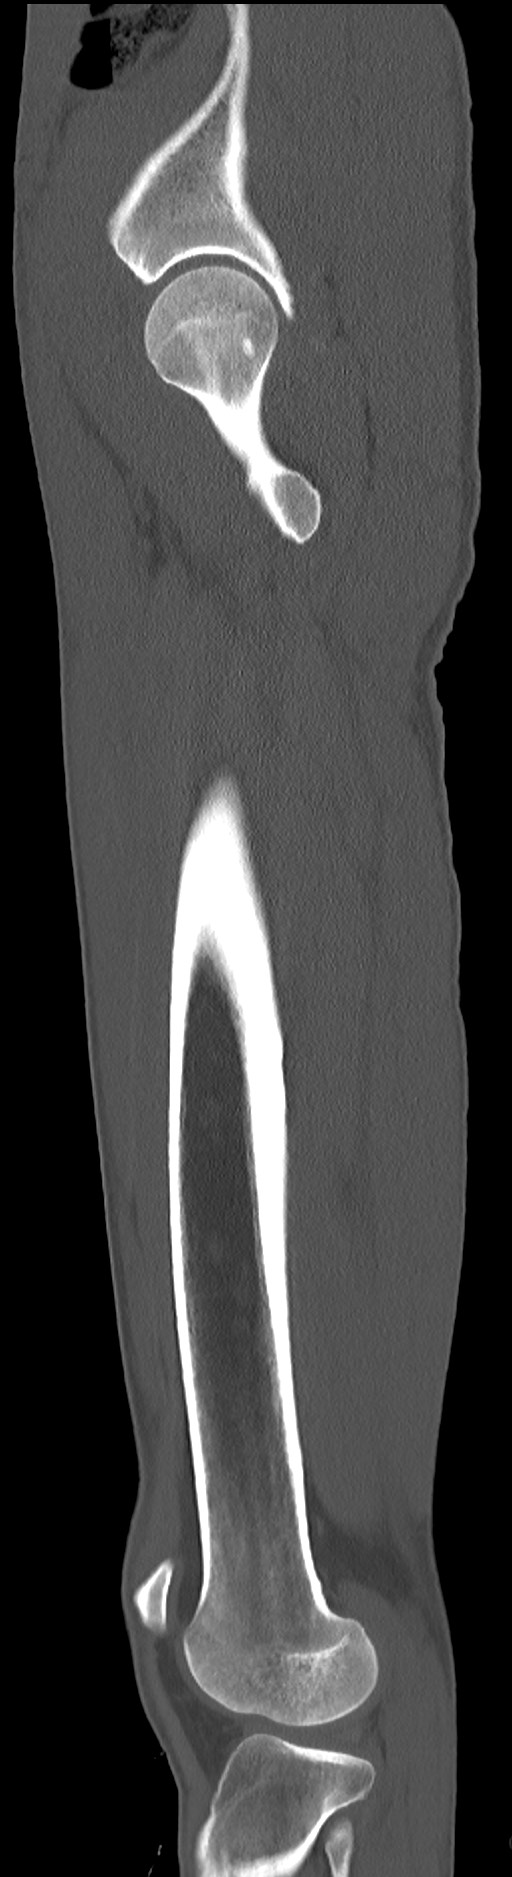 Chronic osteomyelitis (with sequestrum) (Radiopaedia 74813-85822 C 28).jpg